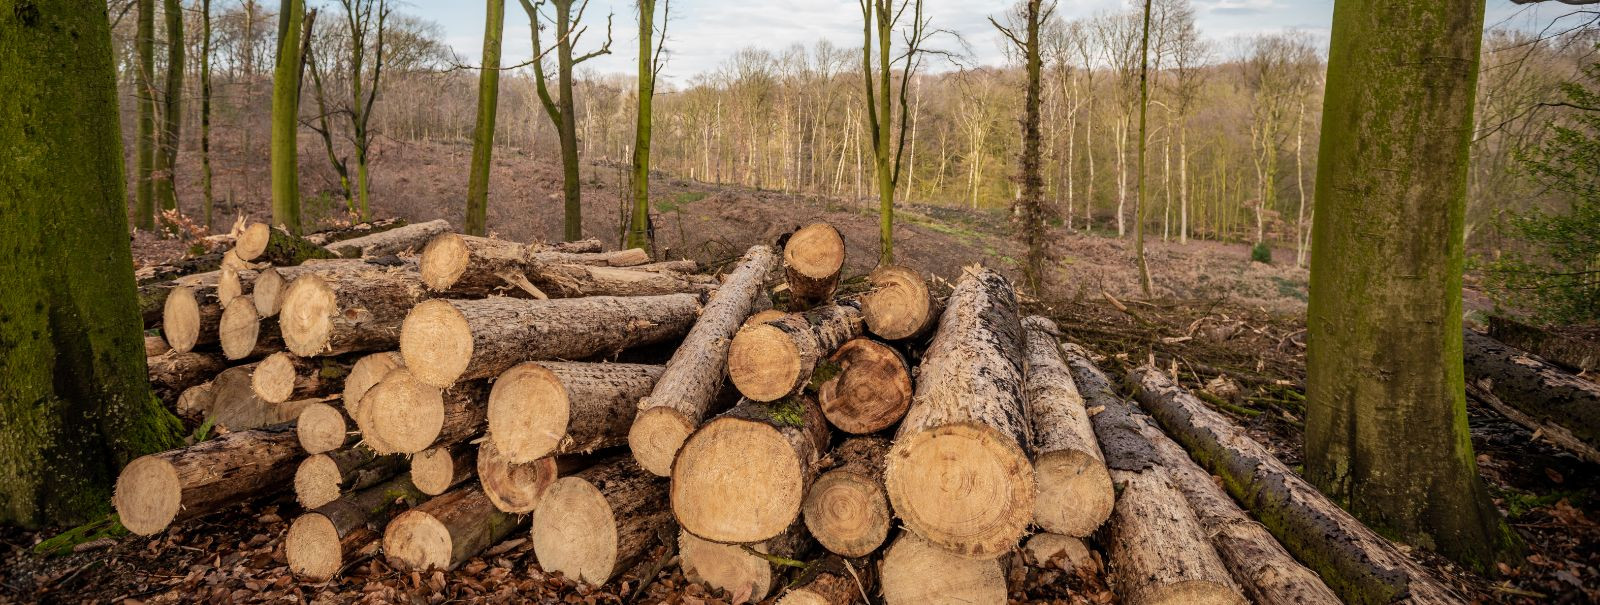 Jätkusuutlik metsandus on majandamisfilosoofia, mis tasakaalustab ...